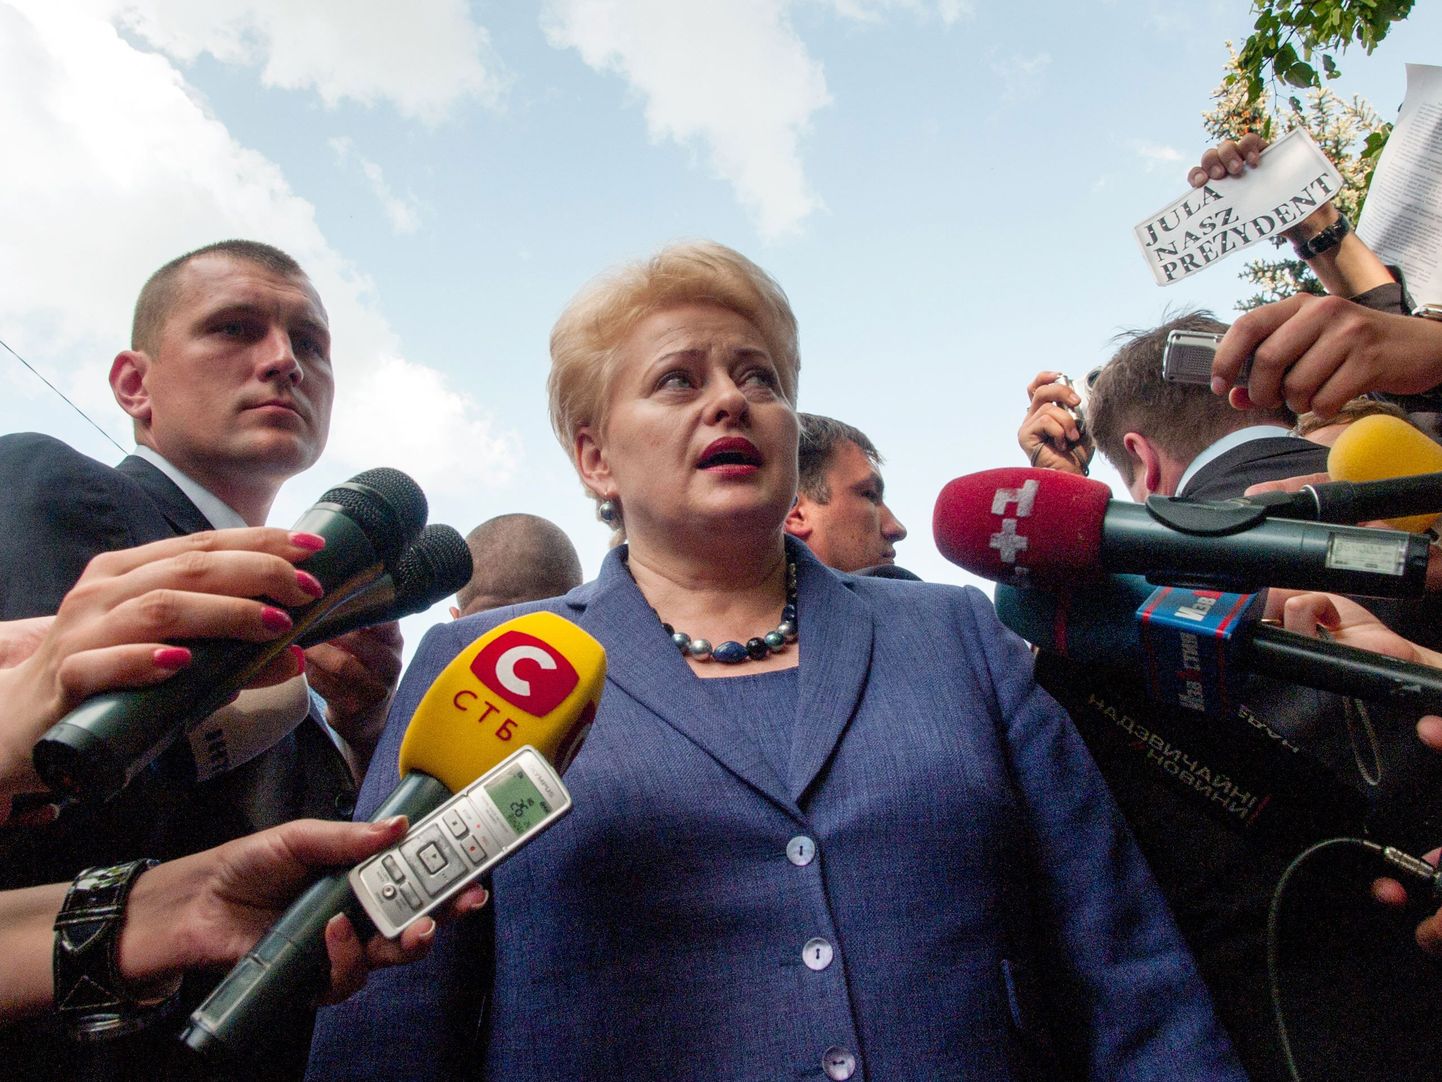 Leedu president Dalia Grybauskaite täna Ukrainas Harkivi linnas ajakirjanikega rääkimas.